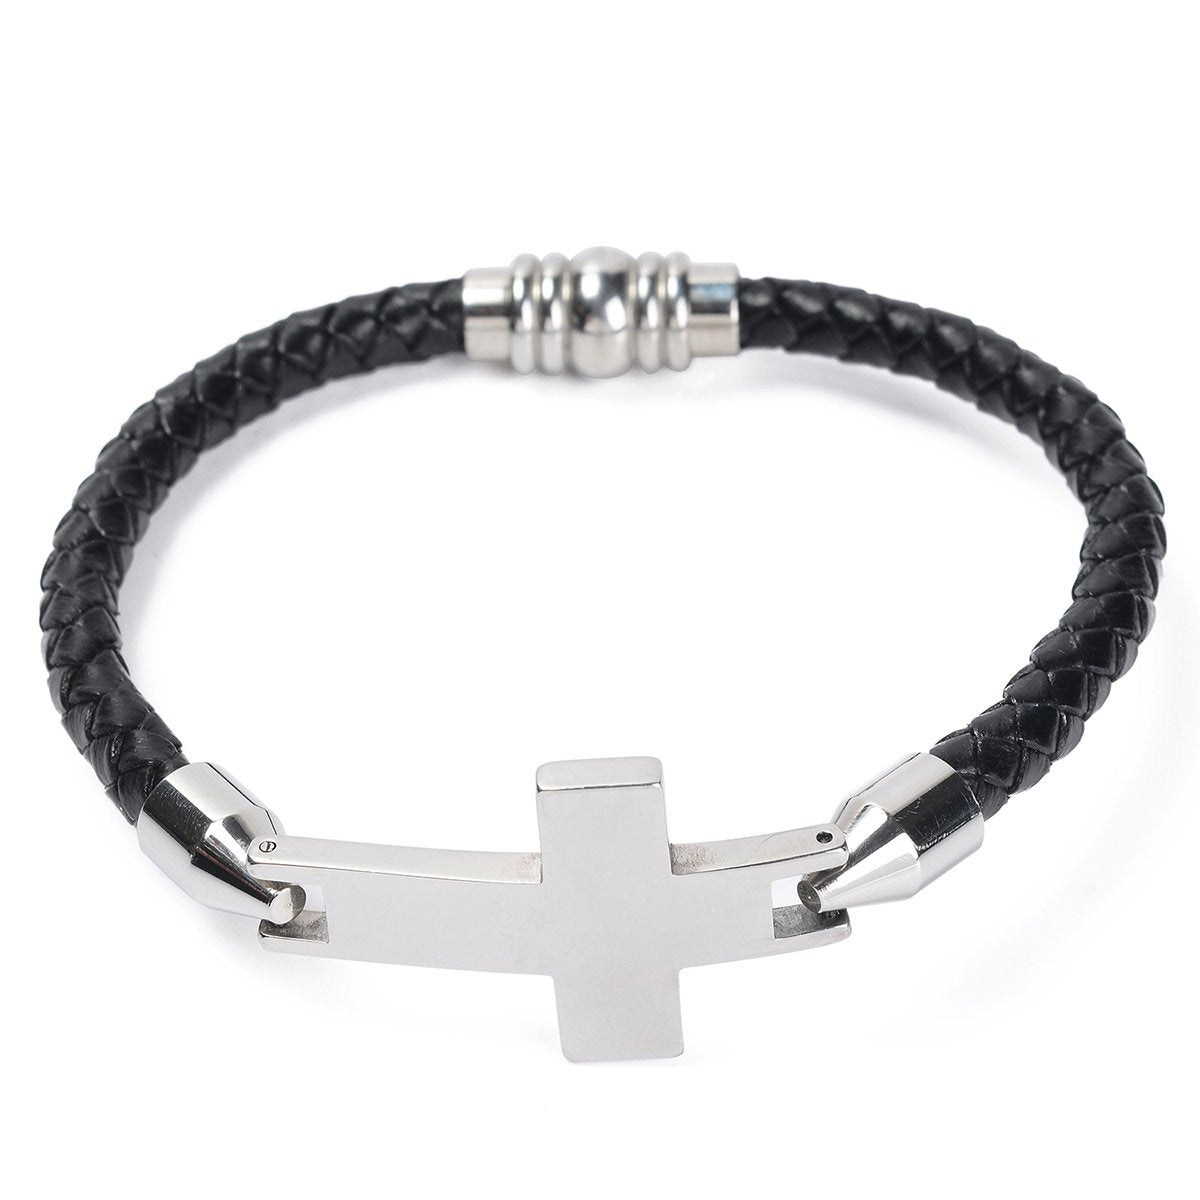 Faith Leather Bracelet